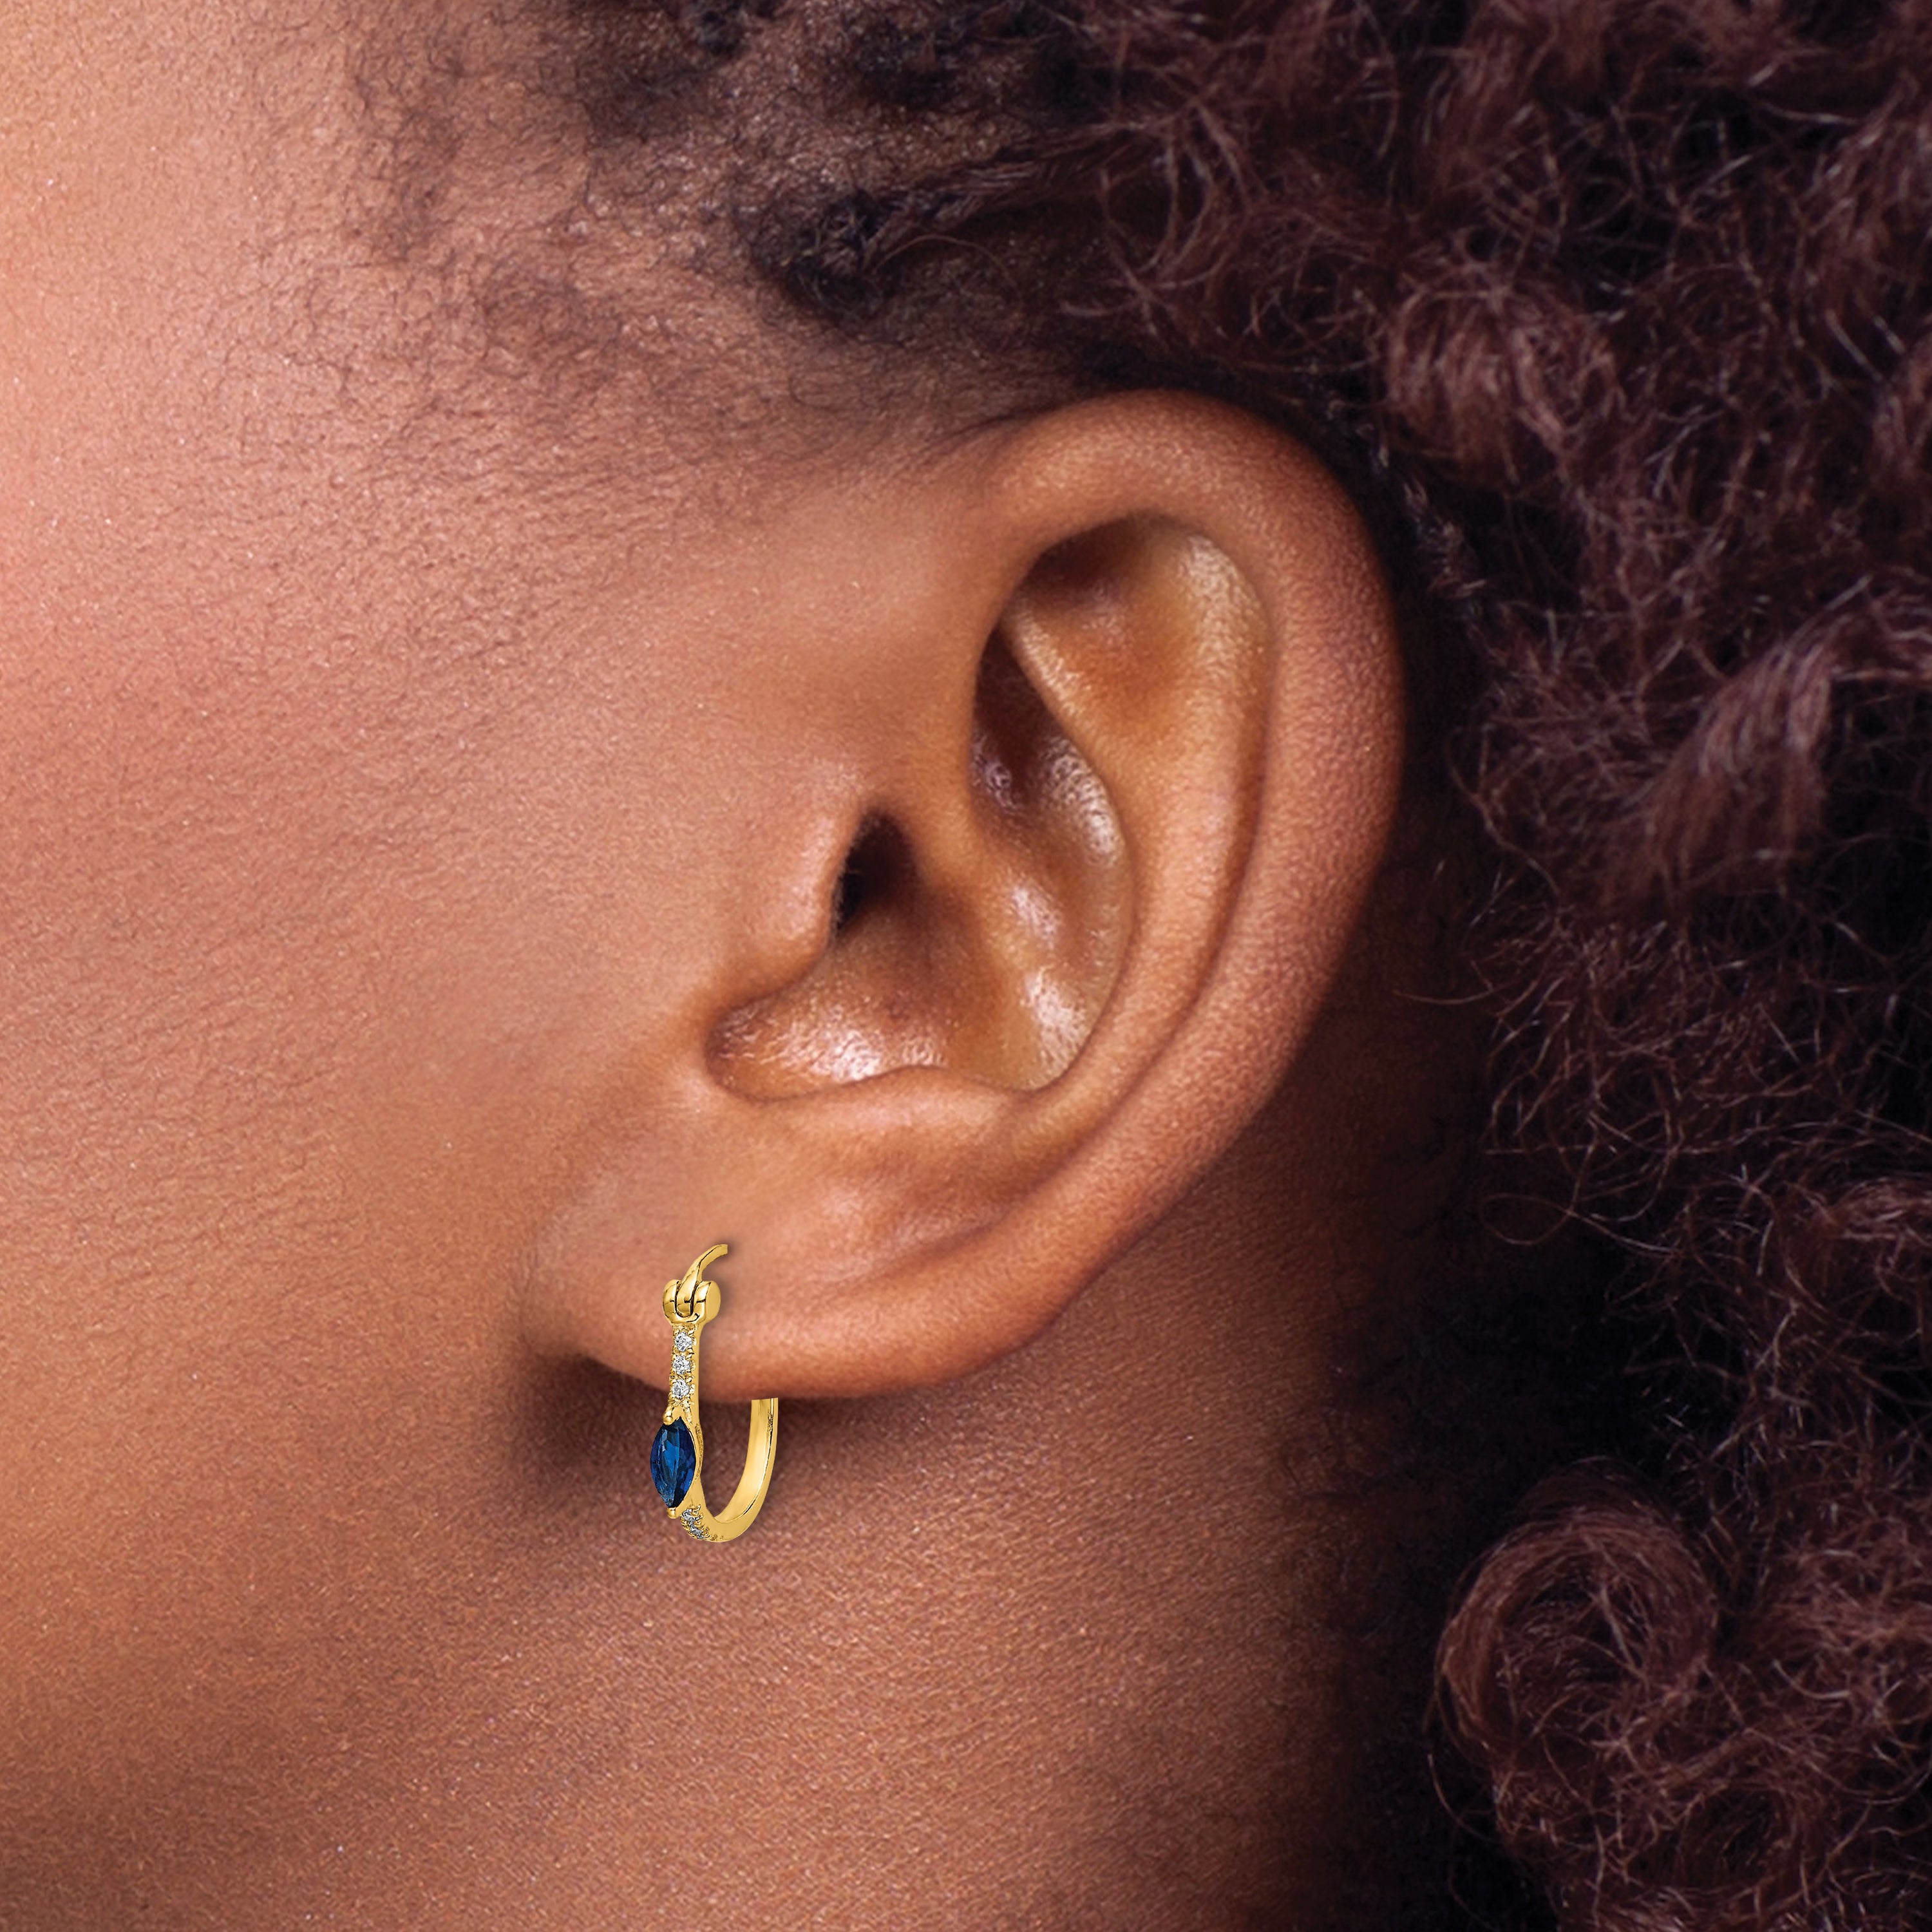 10k 1/20ct Diamond and Sapphire Hinged Hoop Earrings